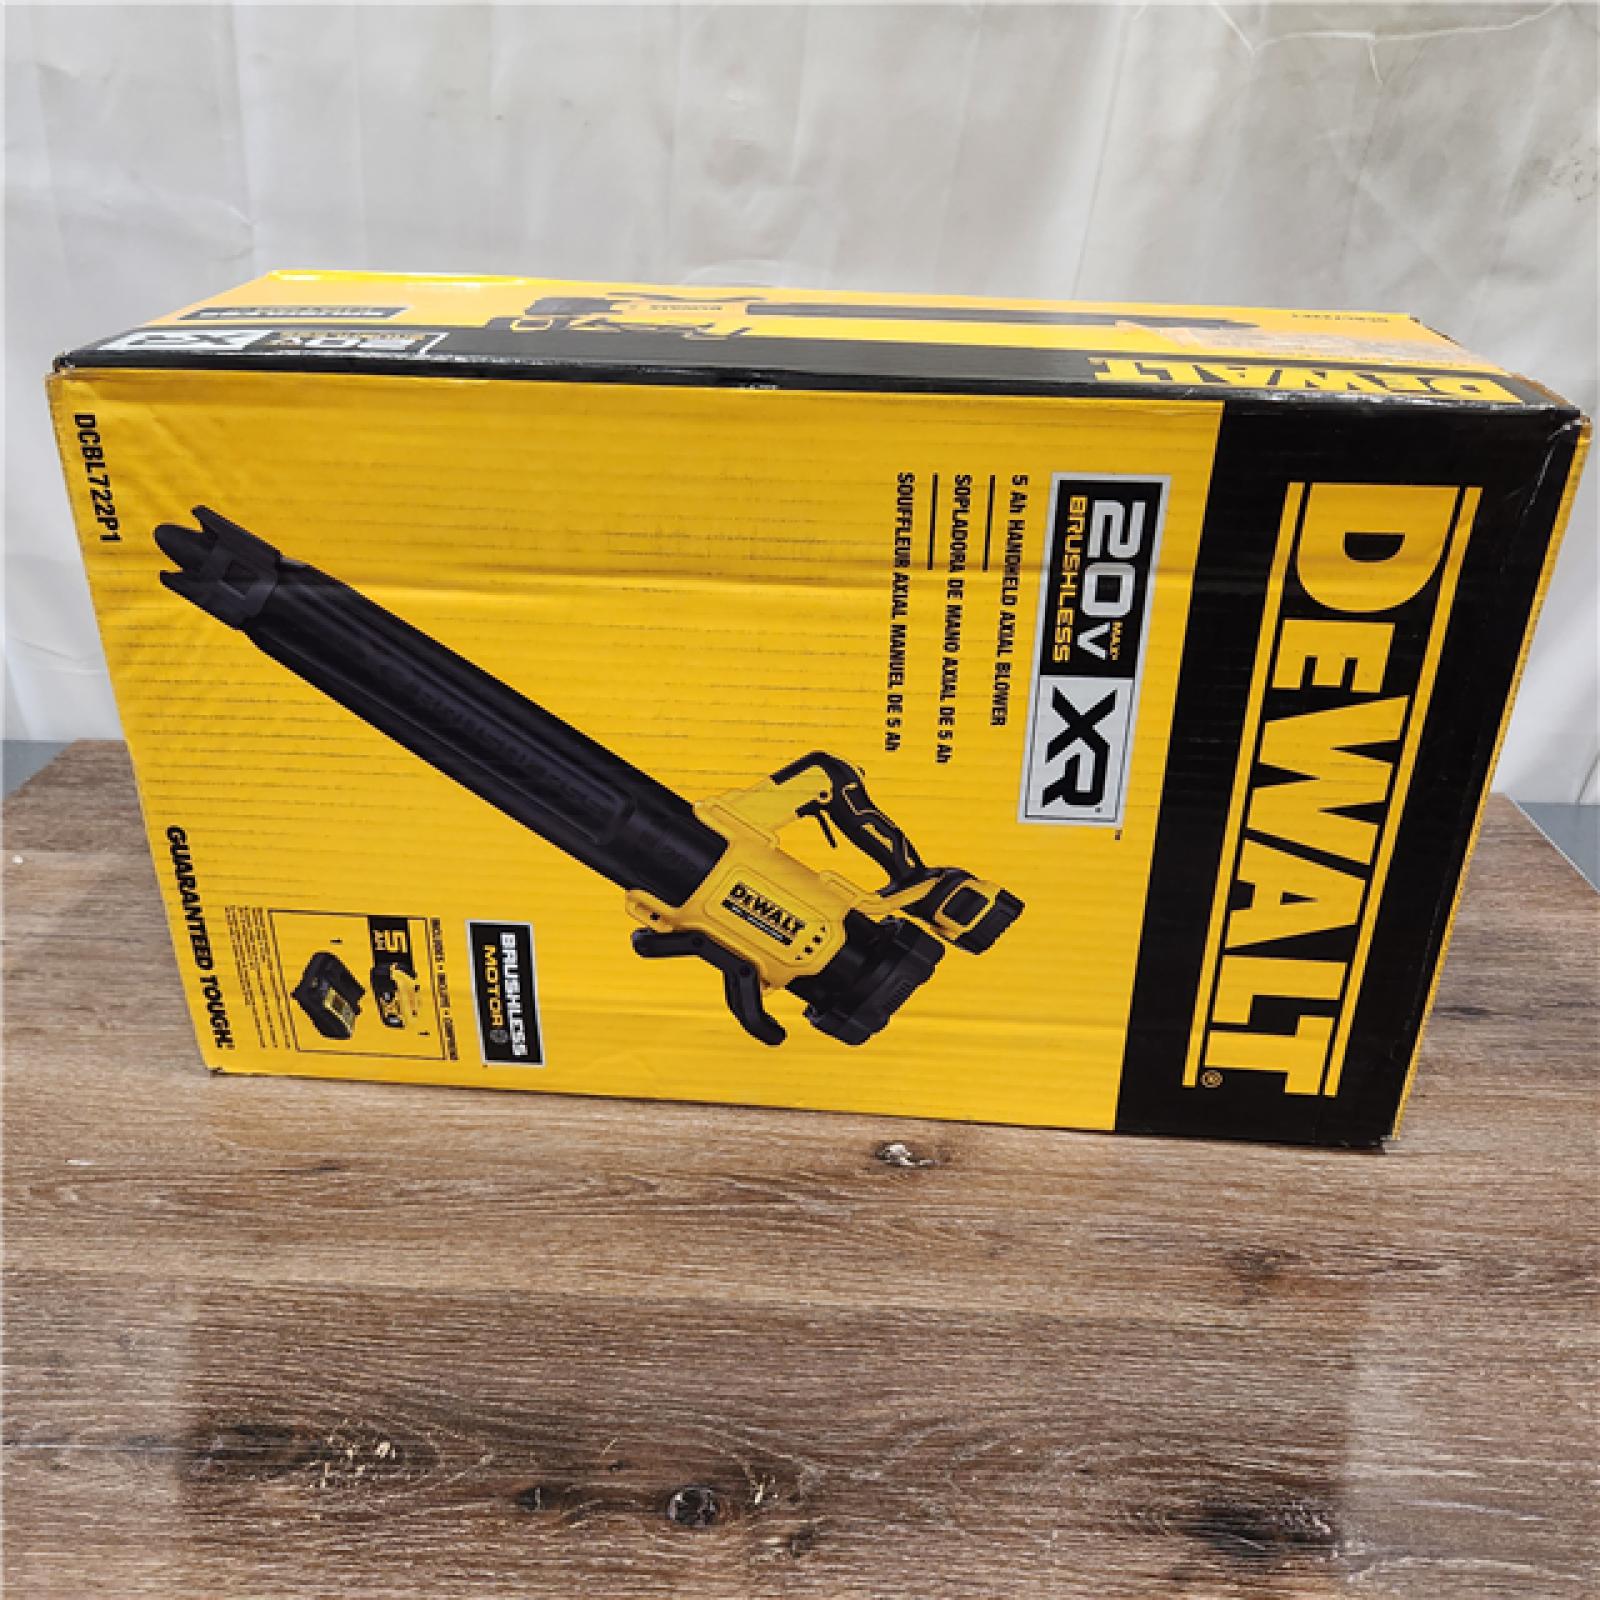 AS-IS DEWALT 20V MAX* XR Brushless Cordless Handheld Blower Kit